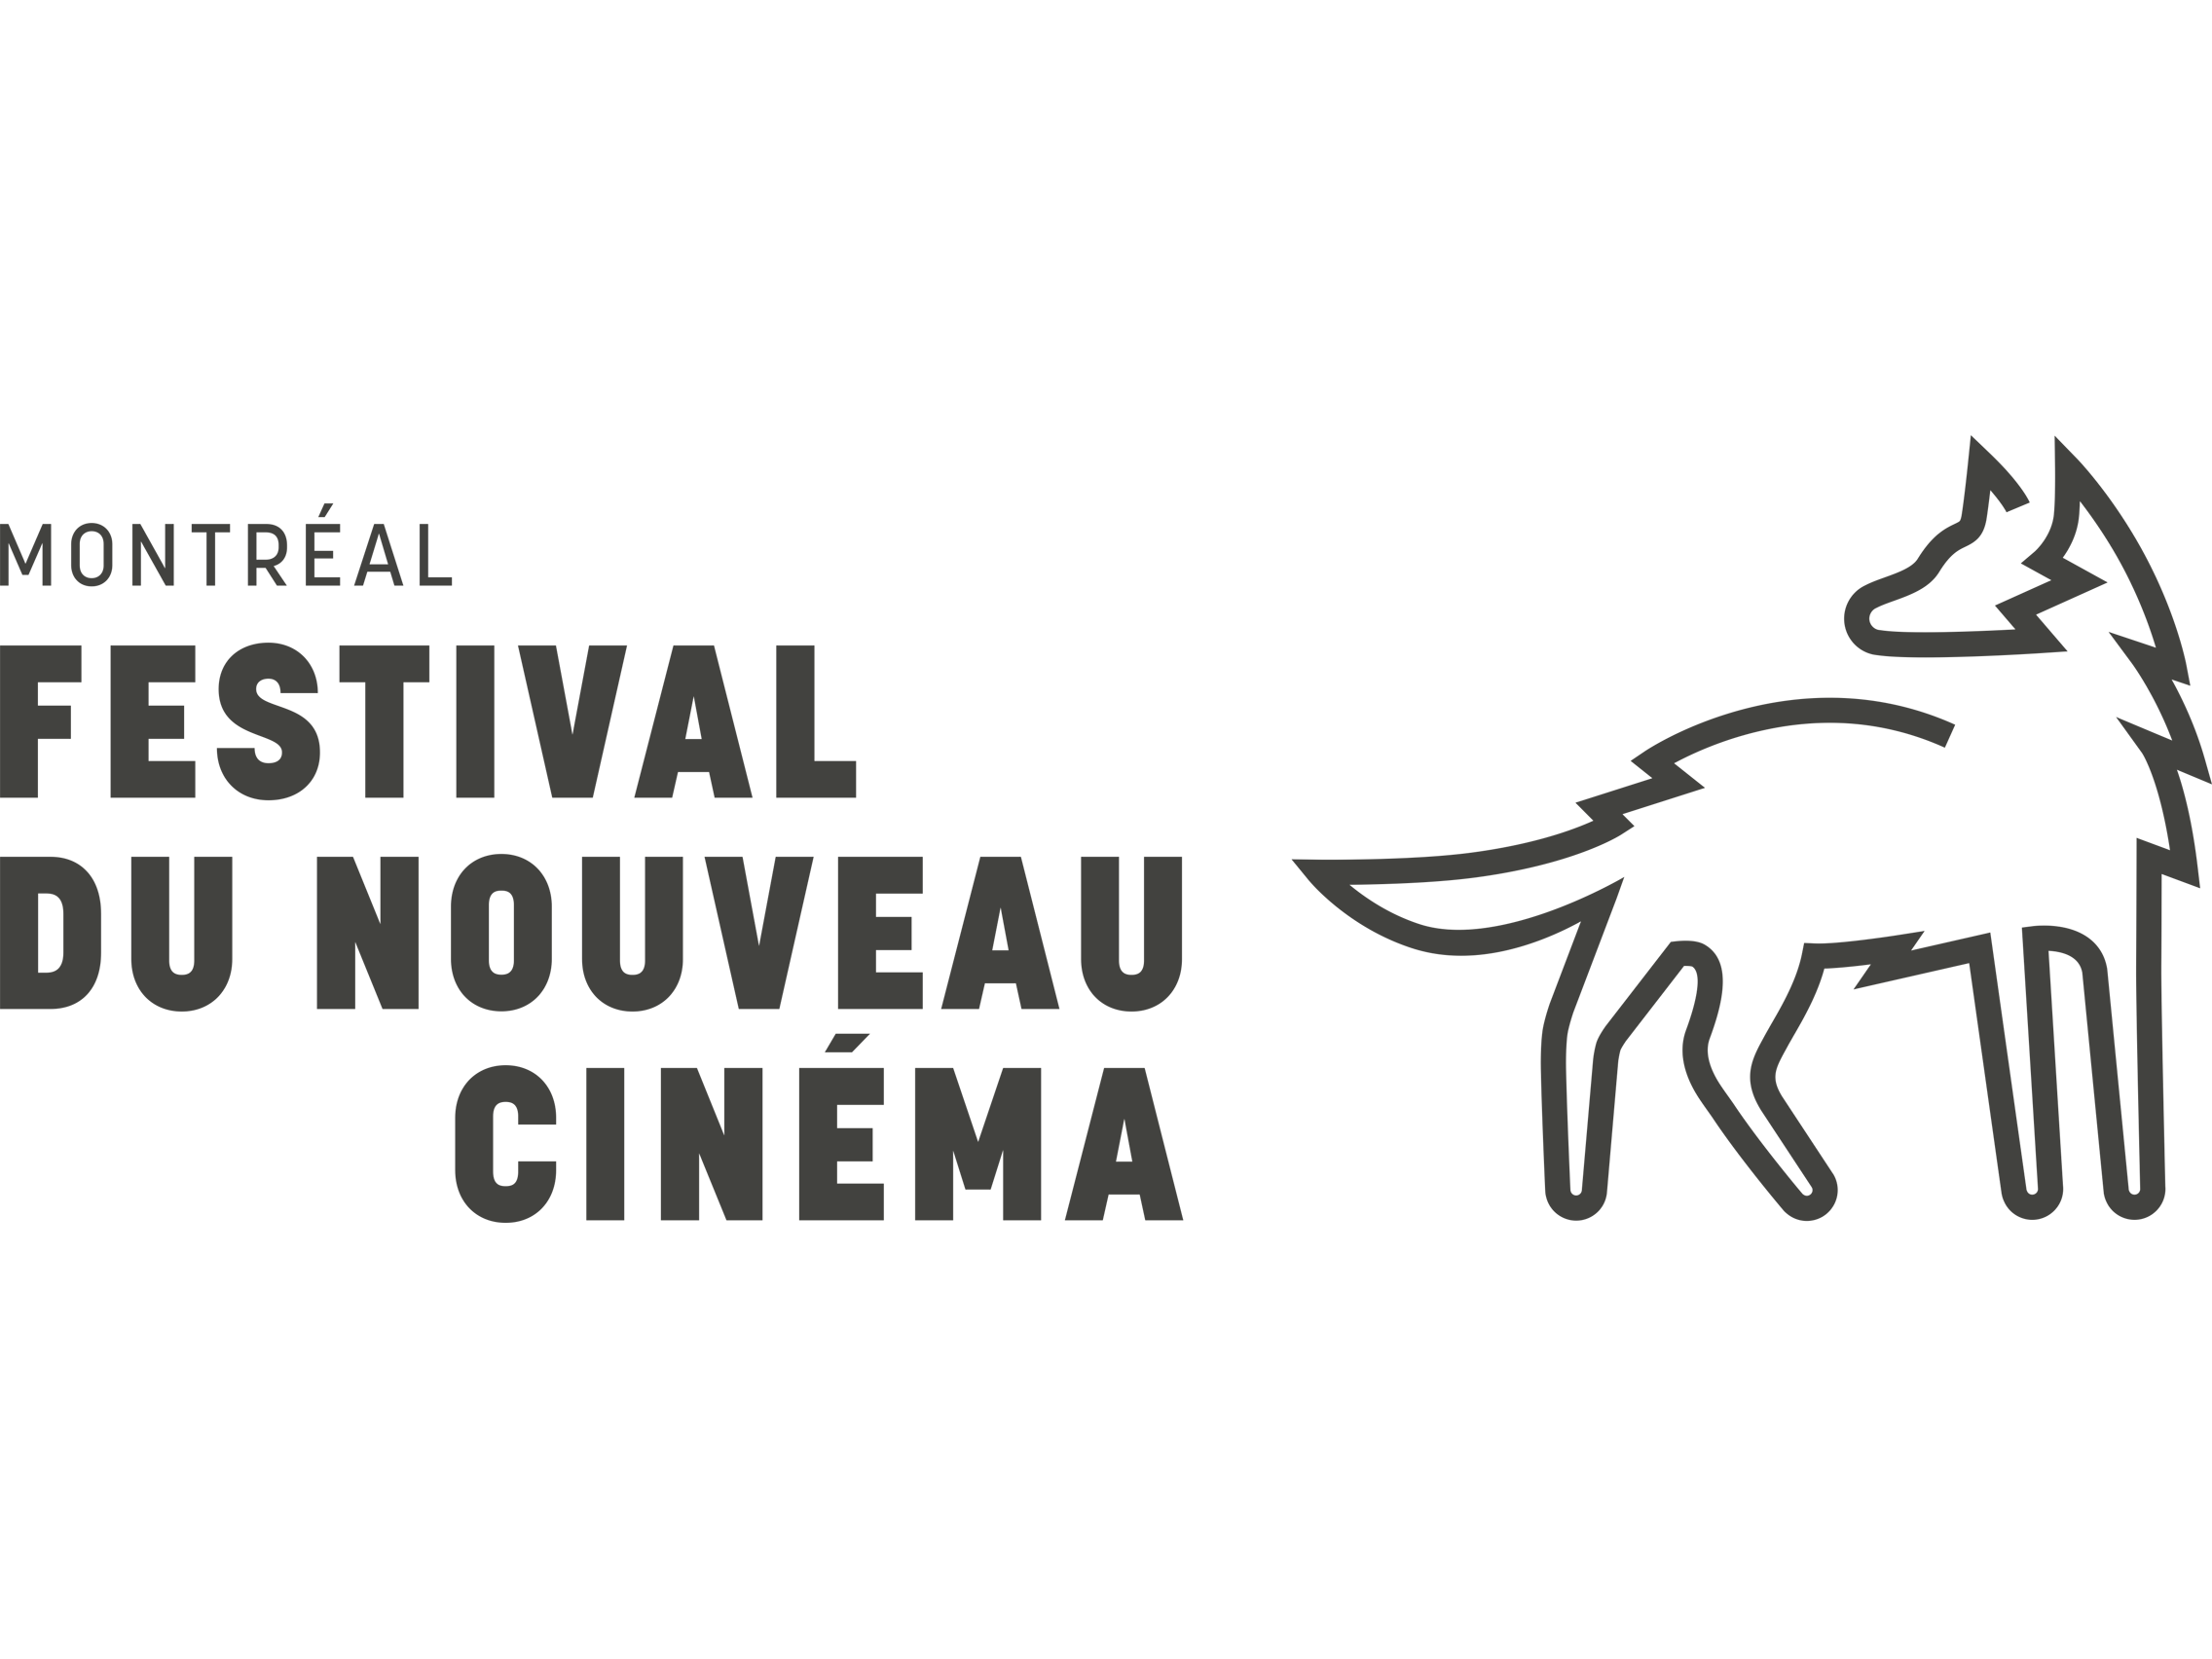 Festival-du-nouveau-cinéma-logo-and-wordmark (1).png